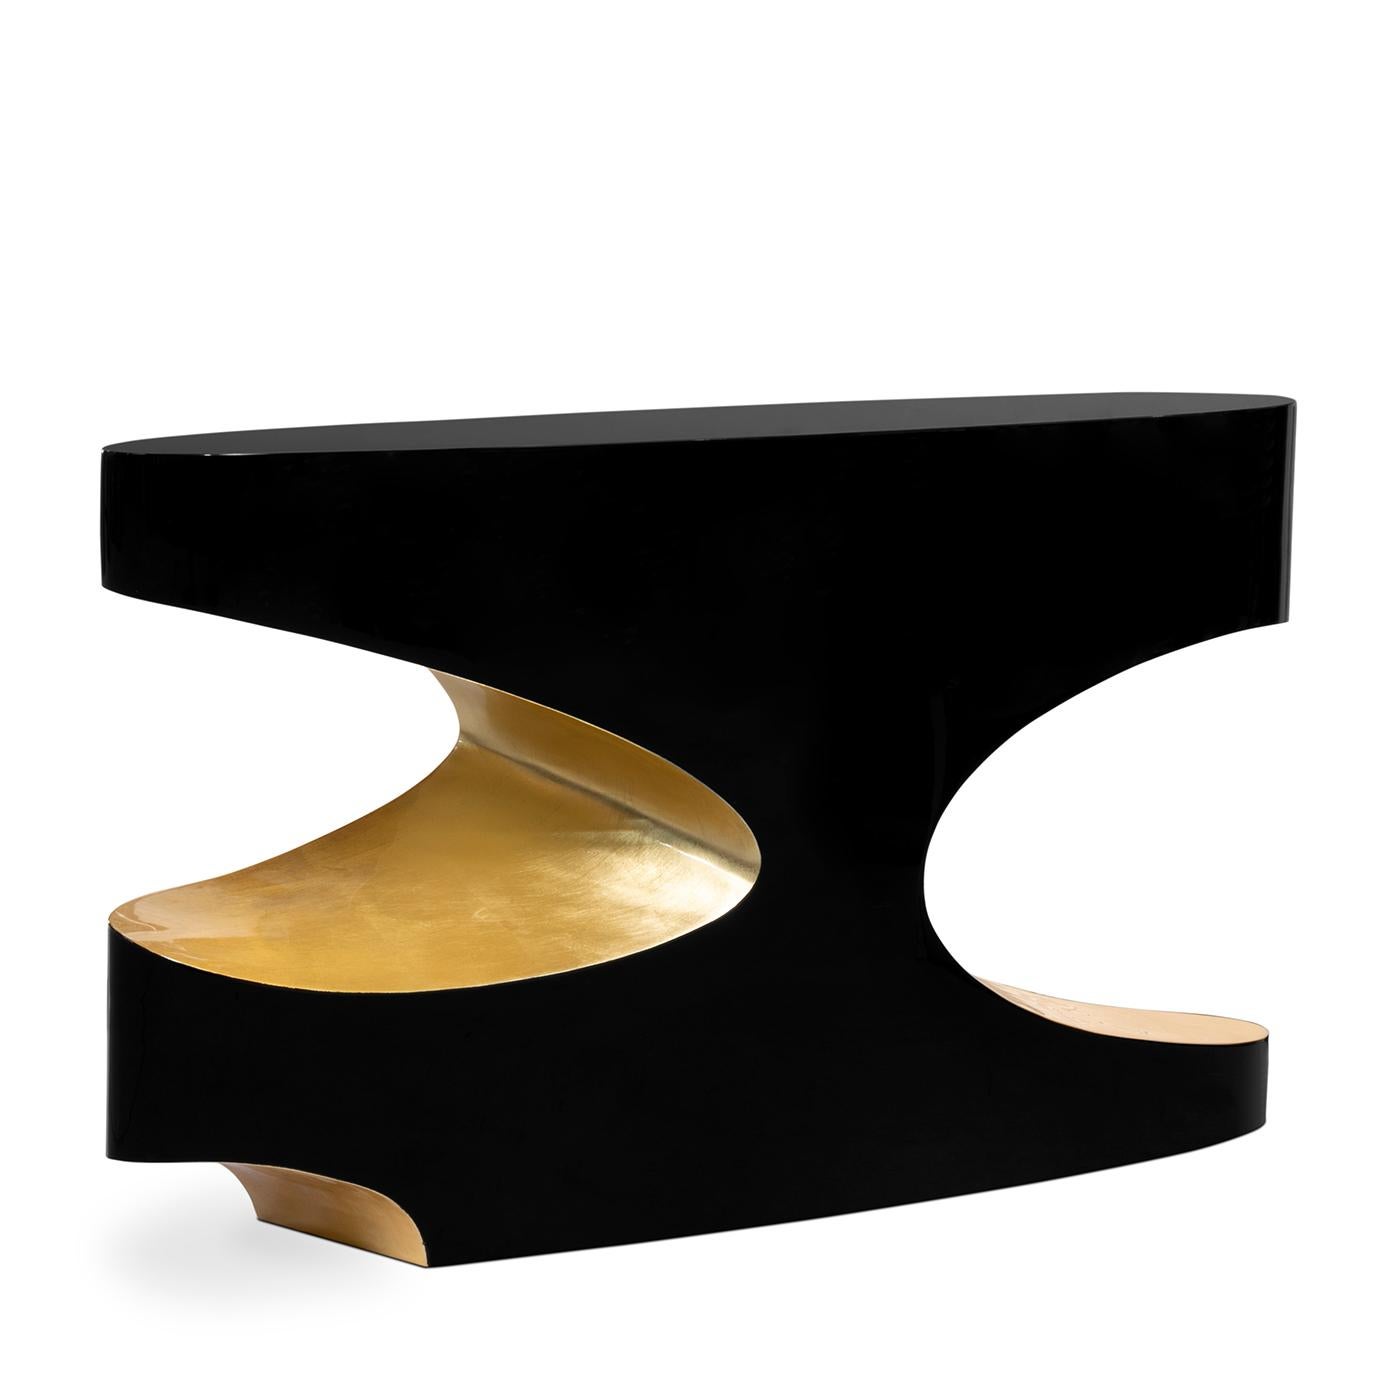 Table console Vadis avec structure en bois en 
finition laquée noire et finition feuille d'or.